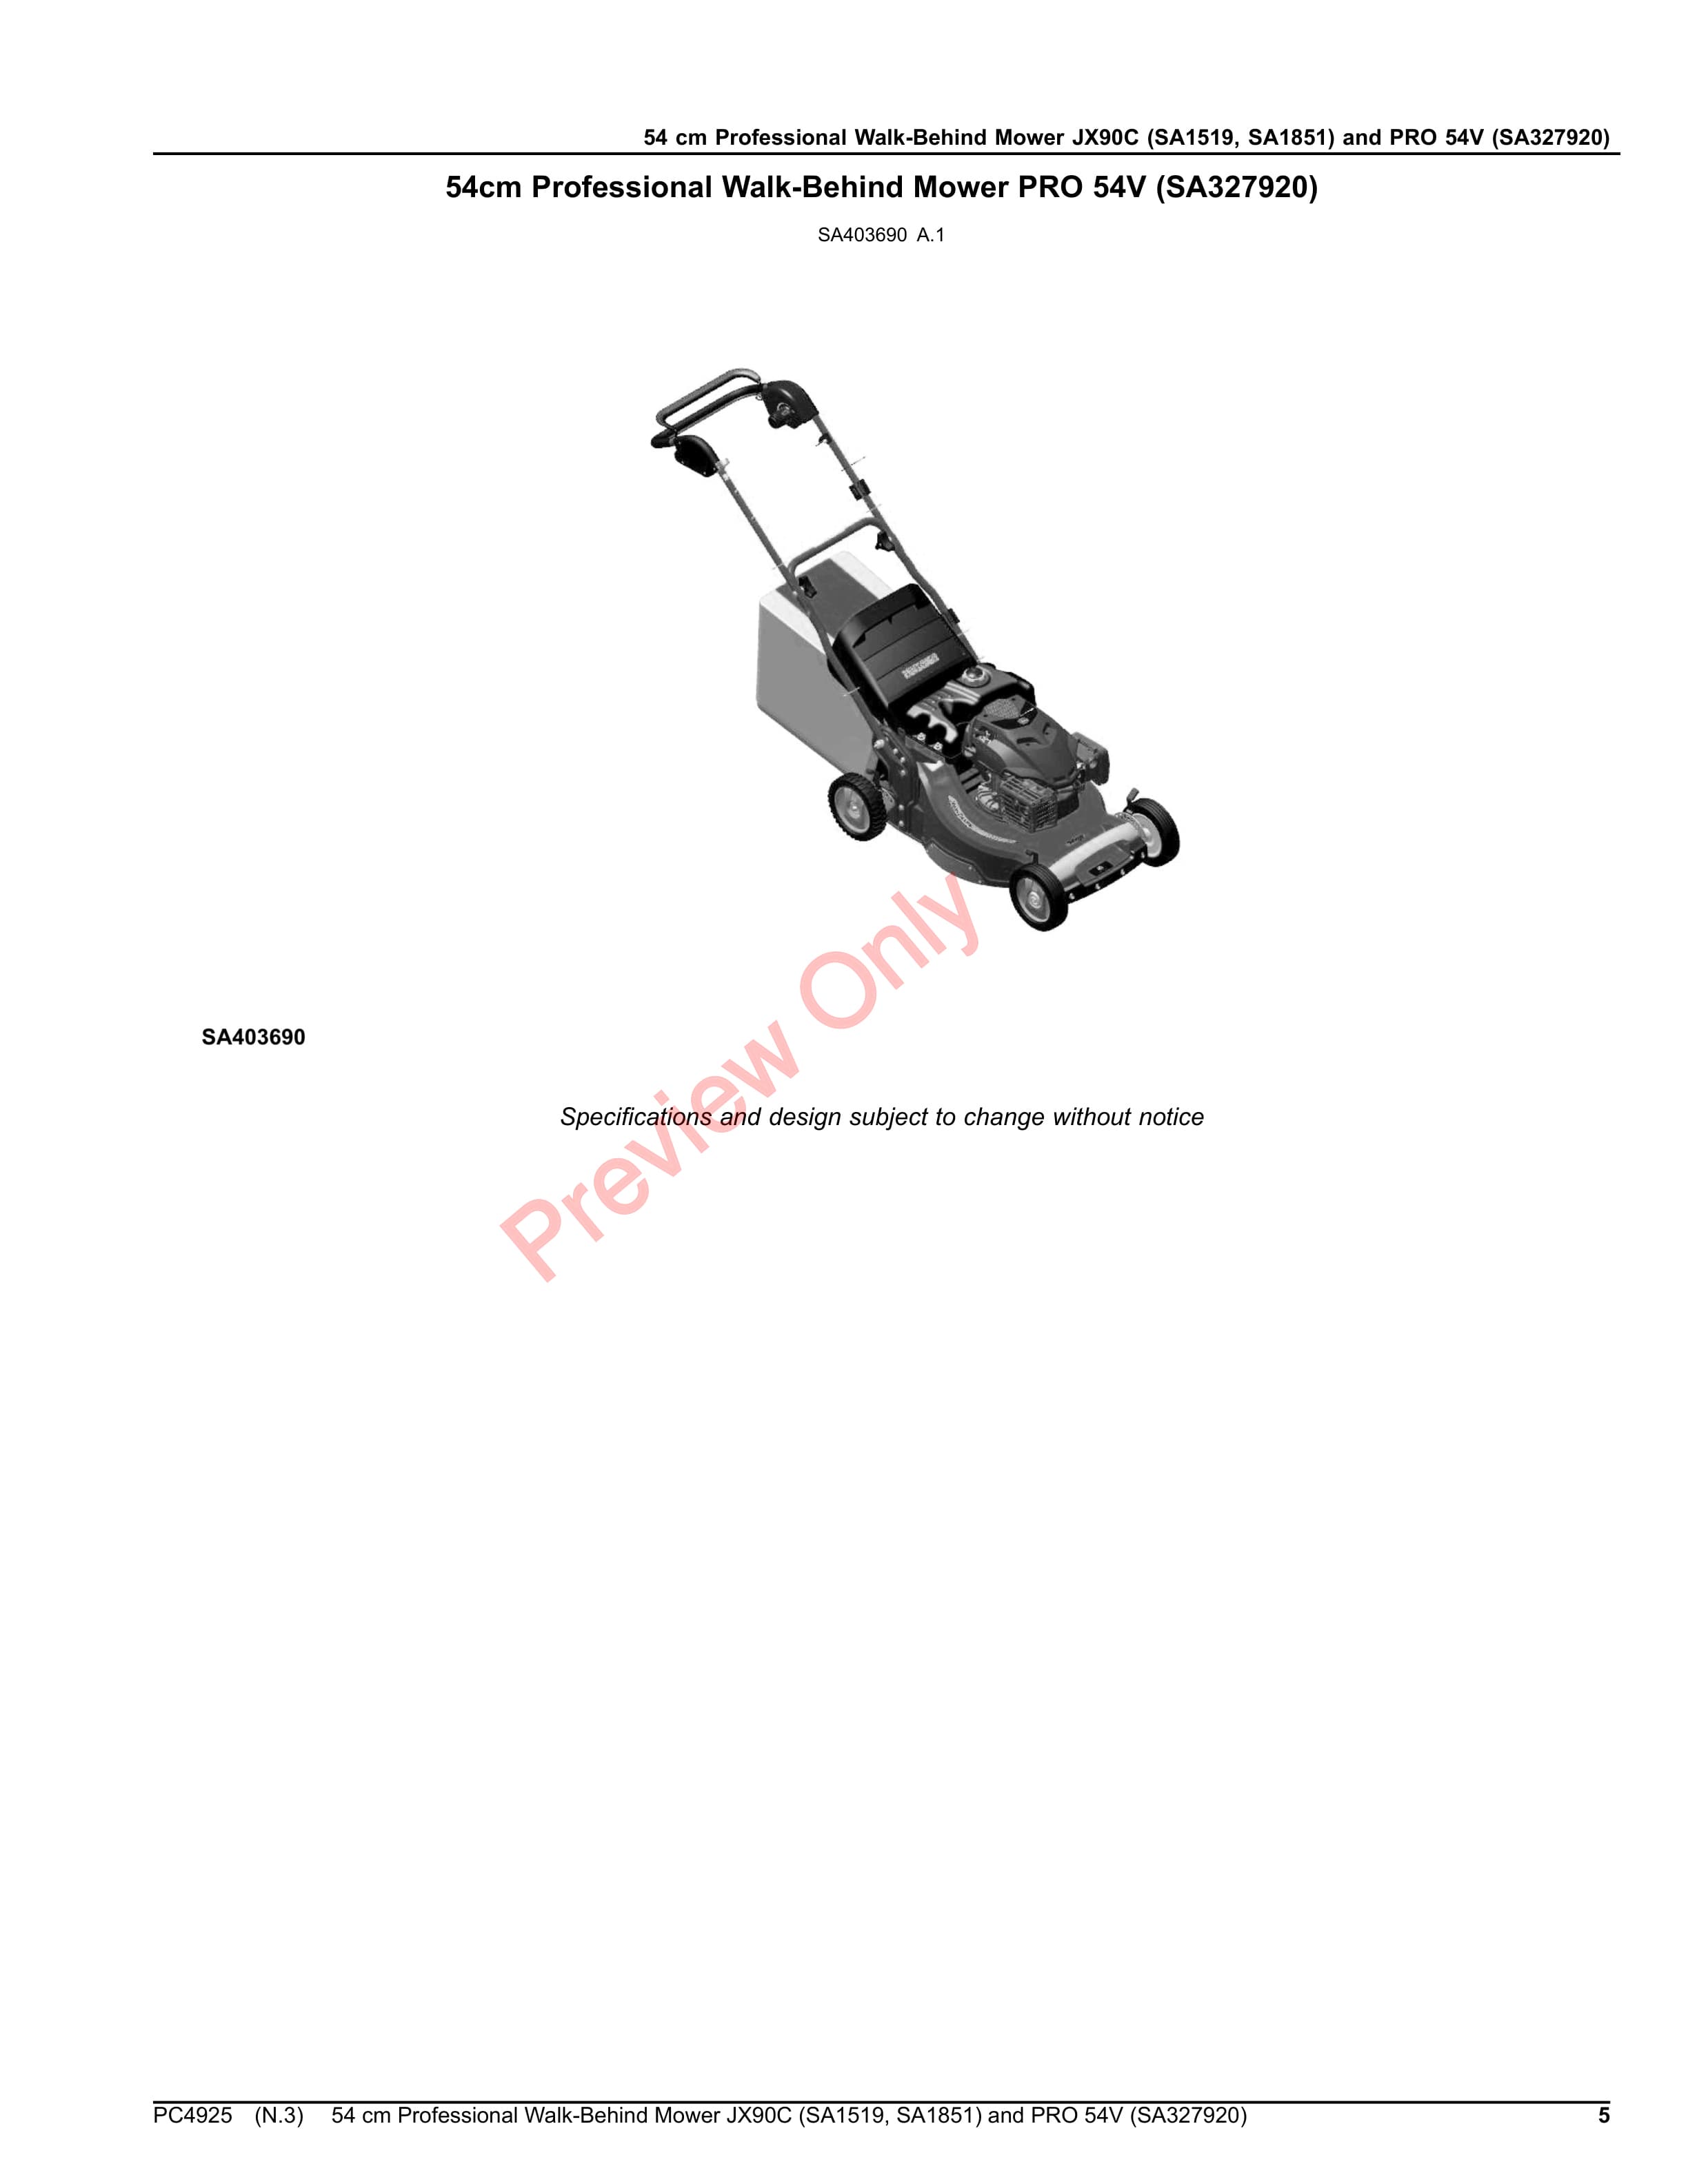 John Deere 54 cm Professional Walk-Behind Mower JX90C (SA1519, SA1851) and PRO 54V (SA327920) Parts Catalog PC4925 09NOV20-5